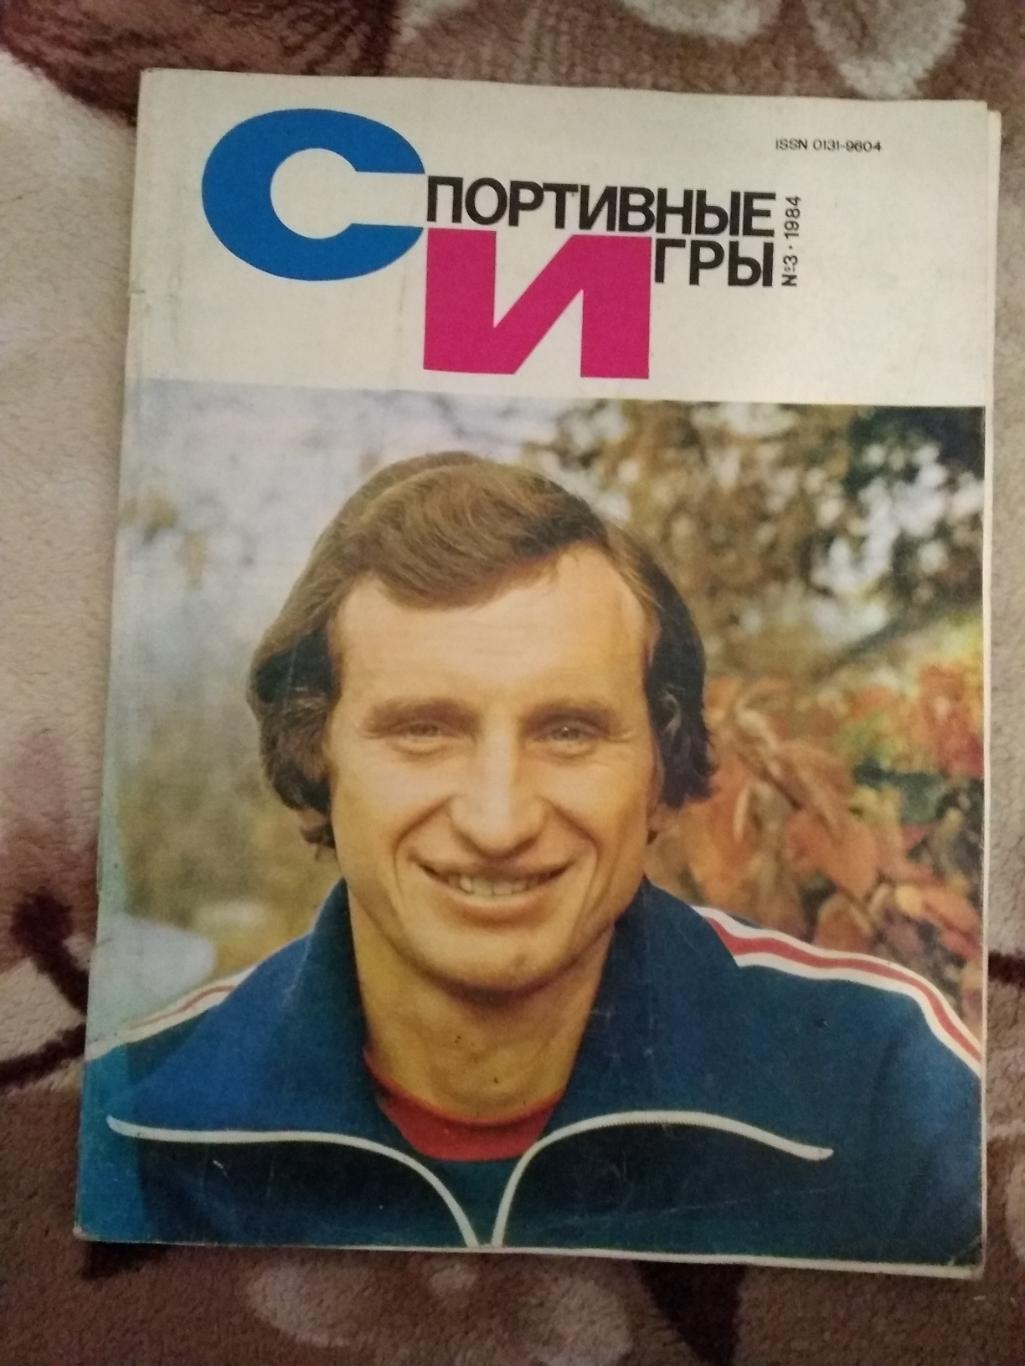 Журнал.Спортивные игры № 3 1984 г.